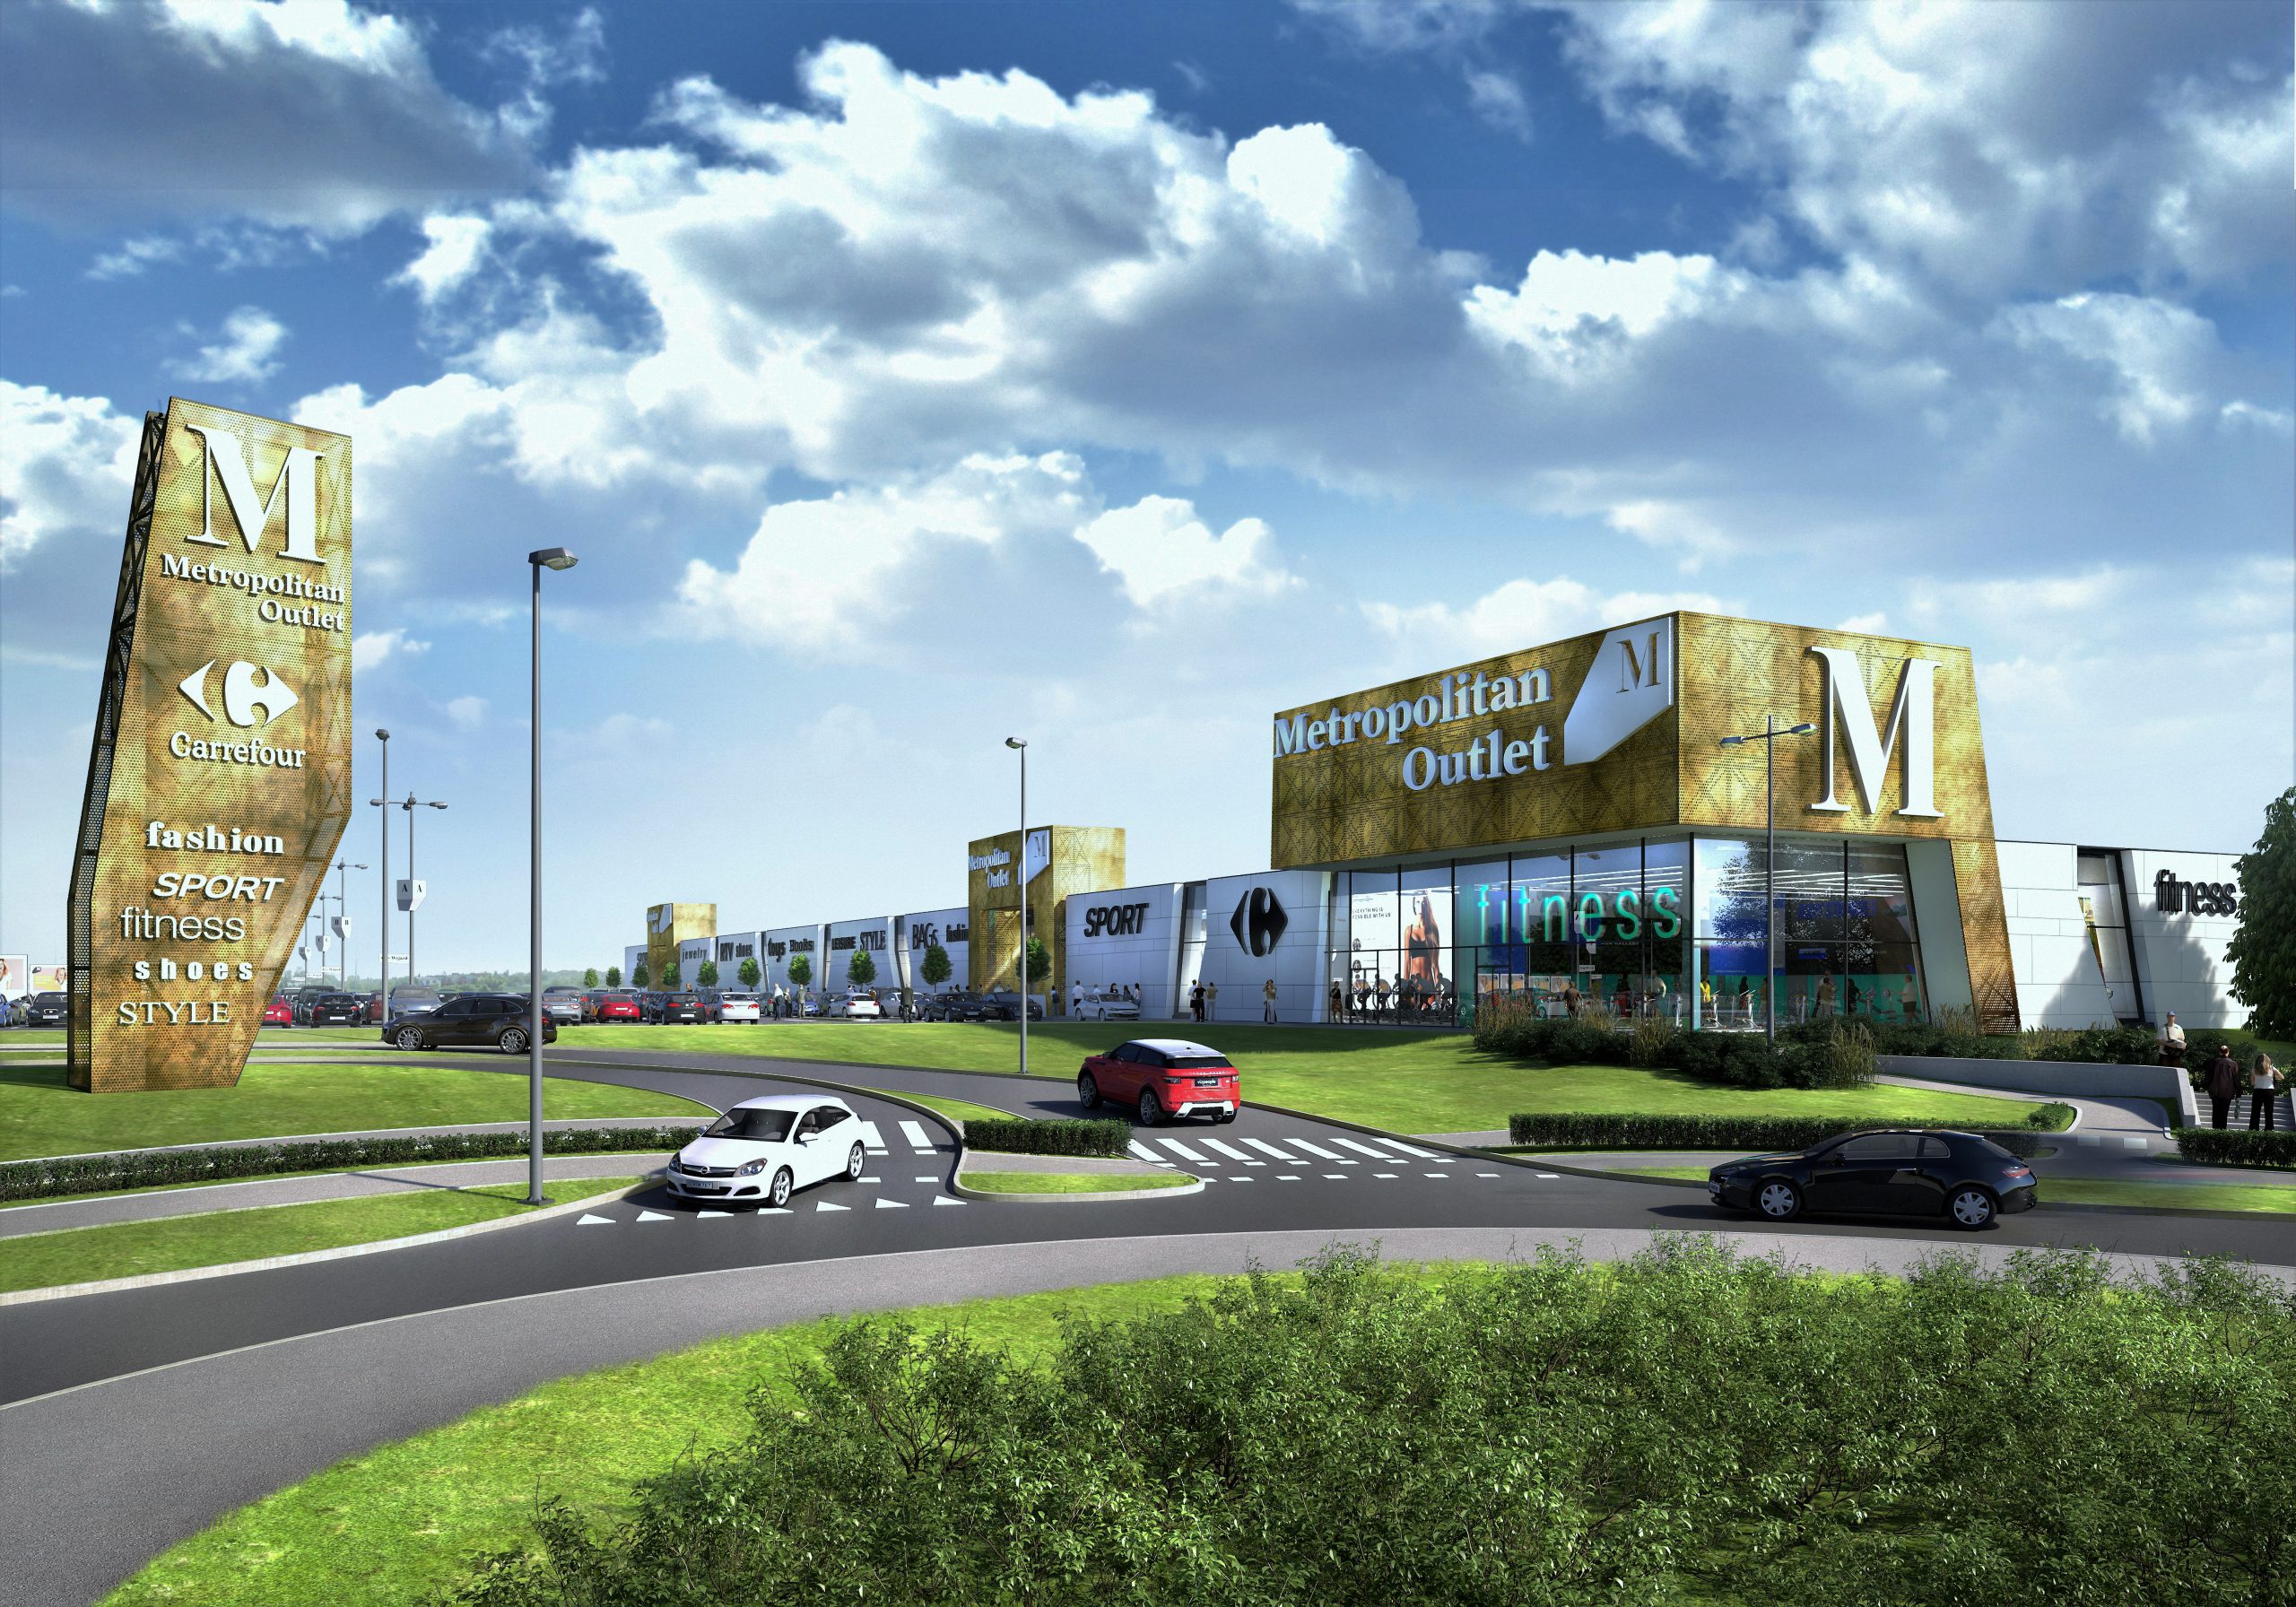 Metropolitan Outlet w Bydgoszczy, którego inwestorem jest Carrefour Polska, ma pozwolenie na budowę